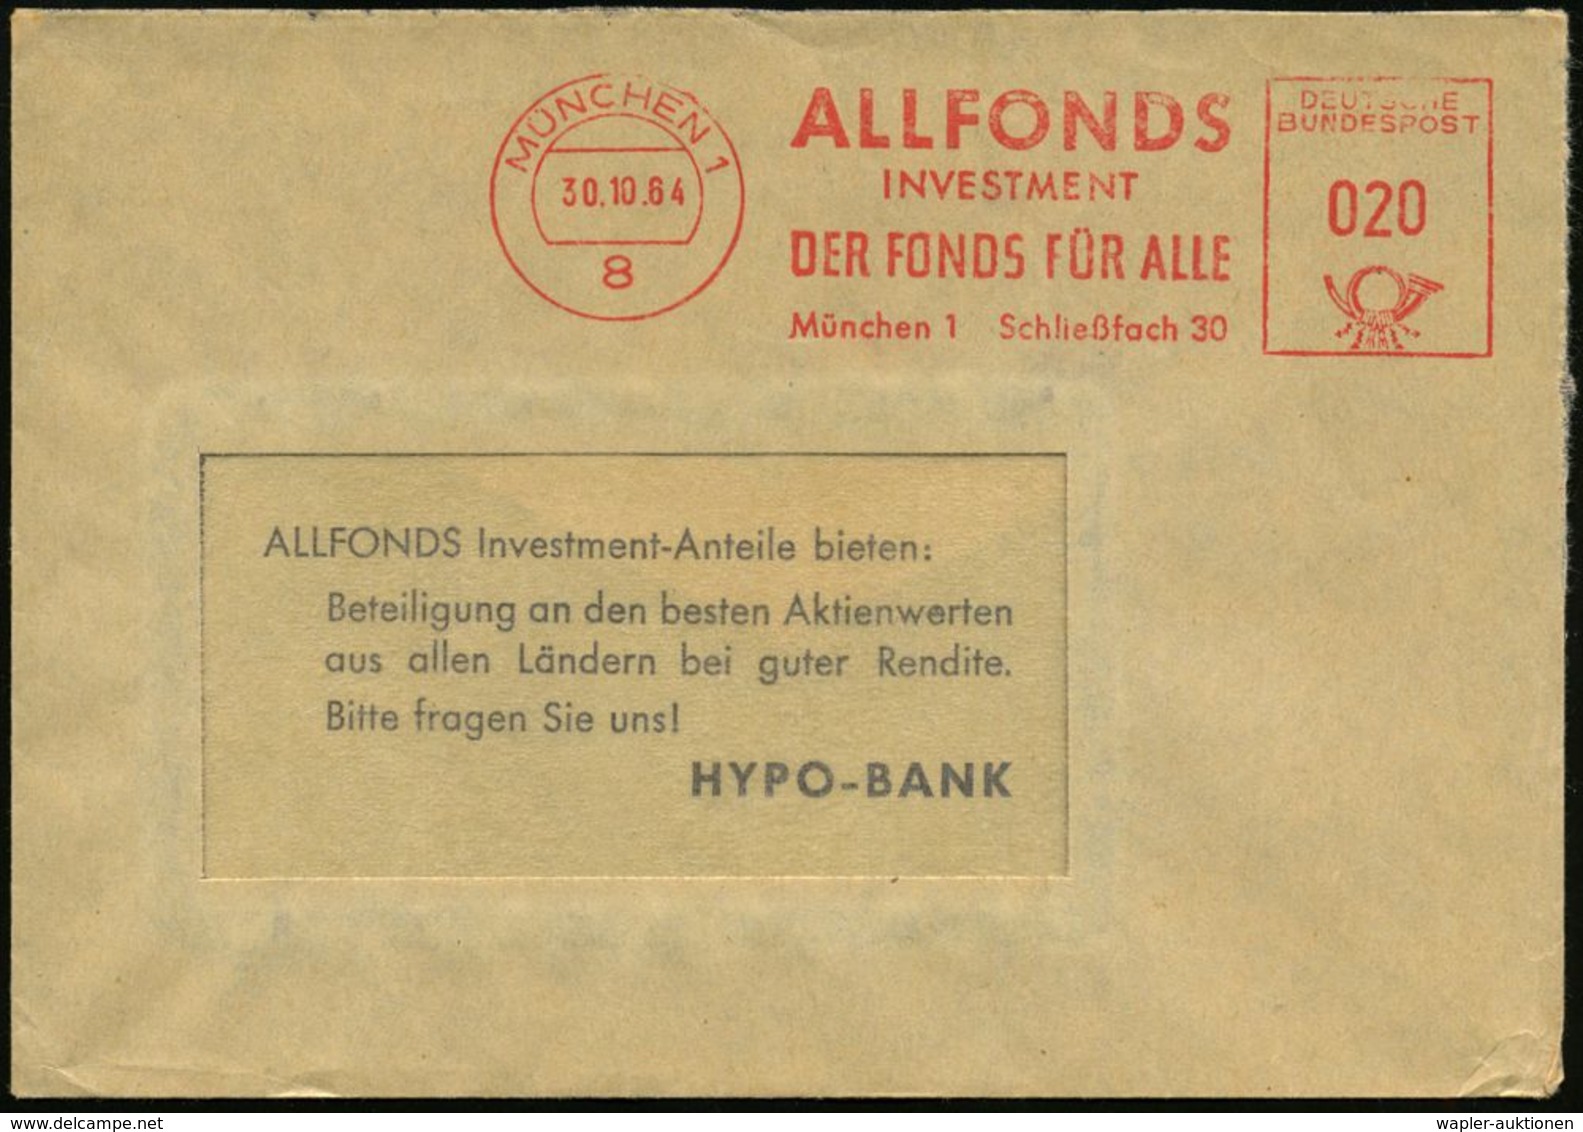 8 MÜNCHEN 1/ ALLFONDS/ INVESTMENT/ DER FONDS FÜR ALLE.. 1964 (30.10.) AFS Auf Reklame-Bf.: HYPO-BANK - Preussen / Prussi - Non Classificati